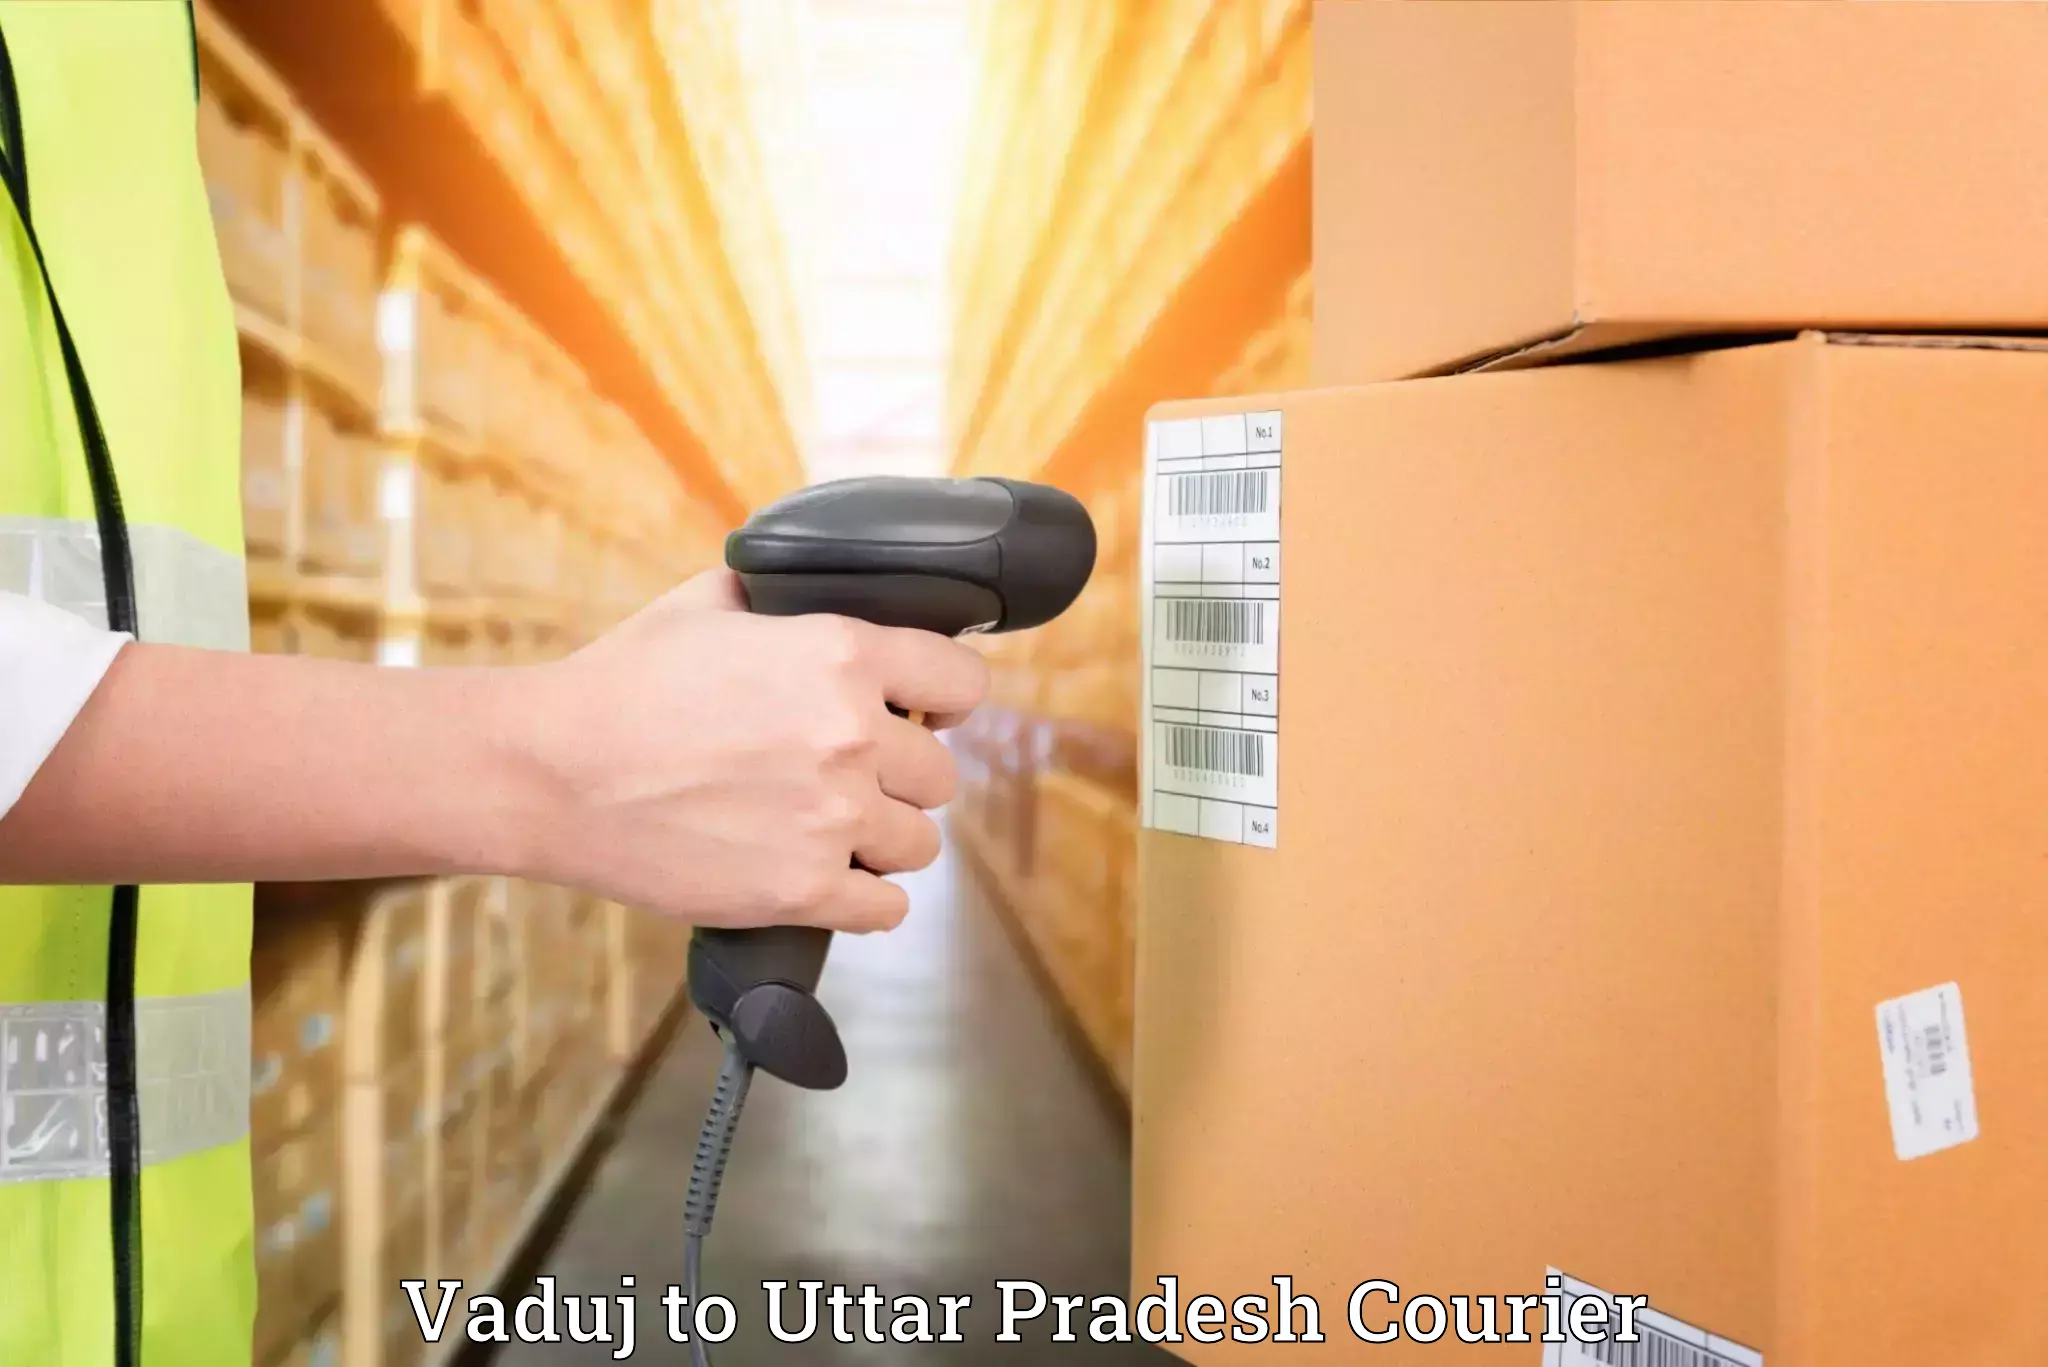 Tailored moving services Vaduj to Varanasi